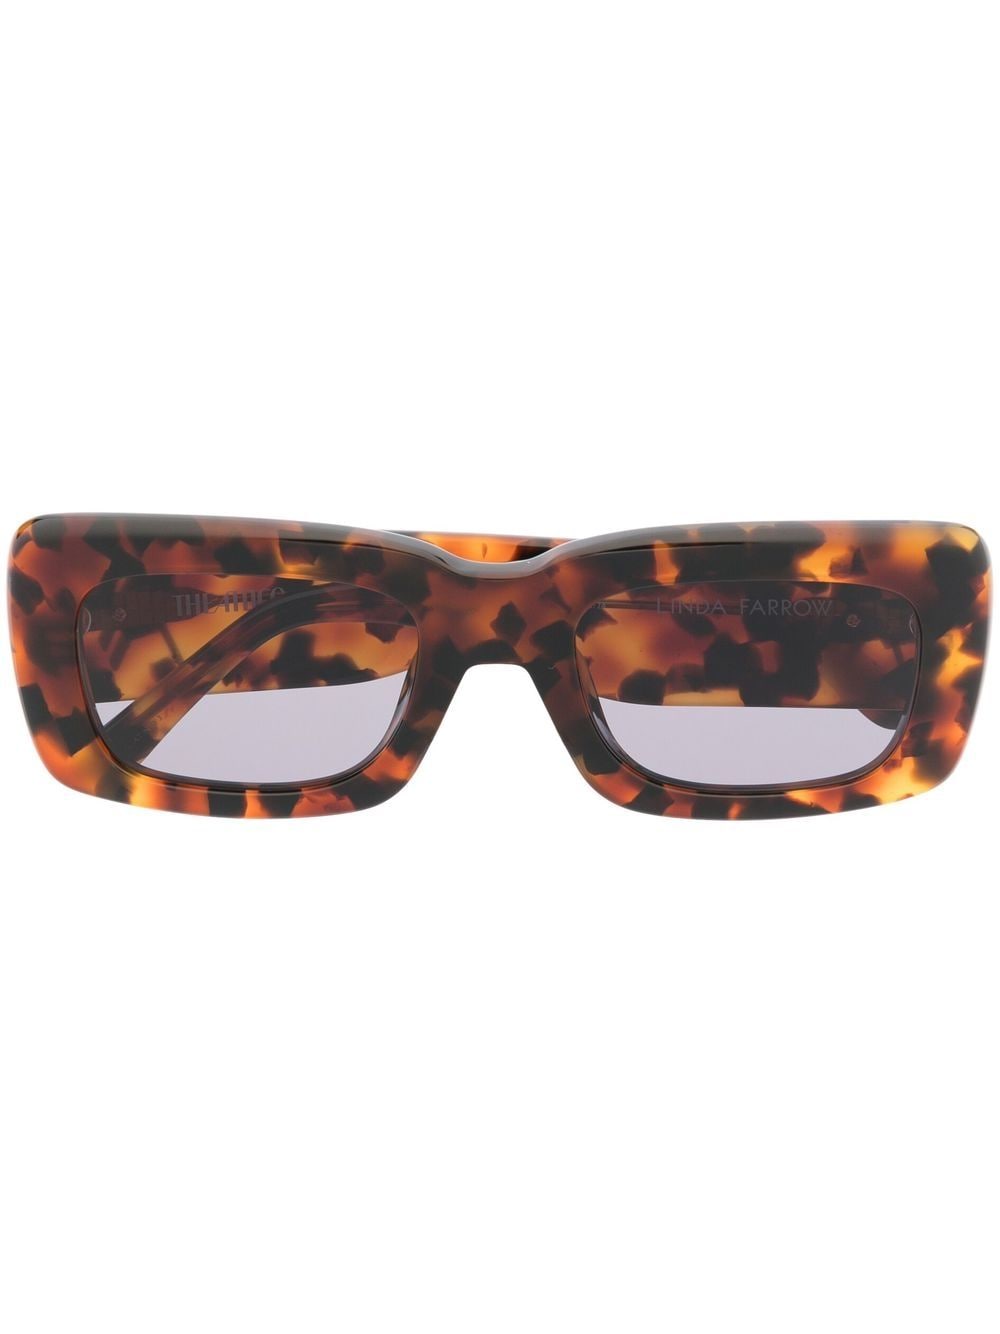 Linda Farrow Tortoiseshell-frame Sunglasses In Brown